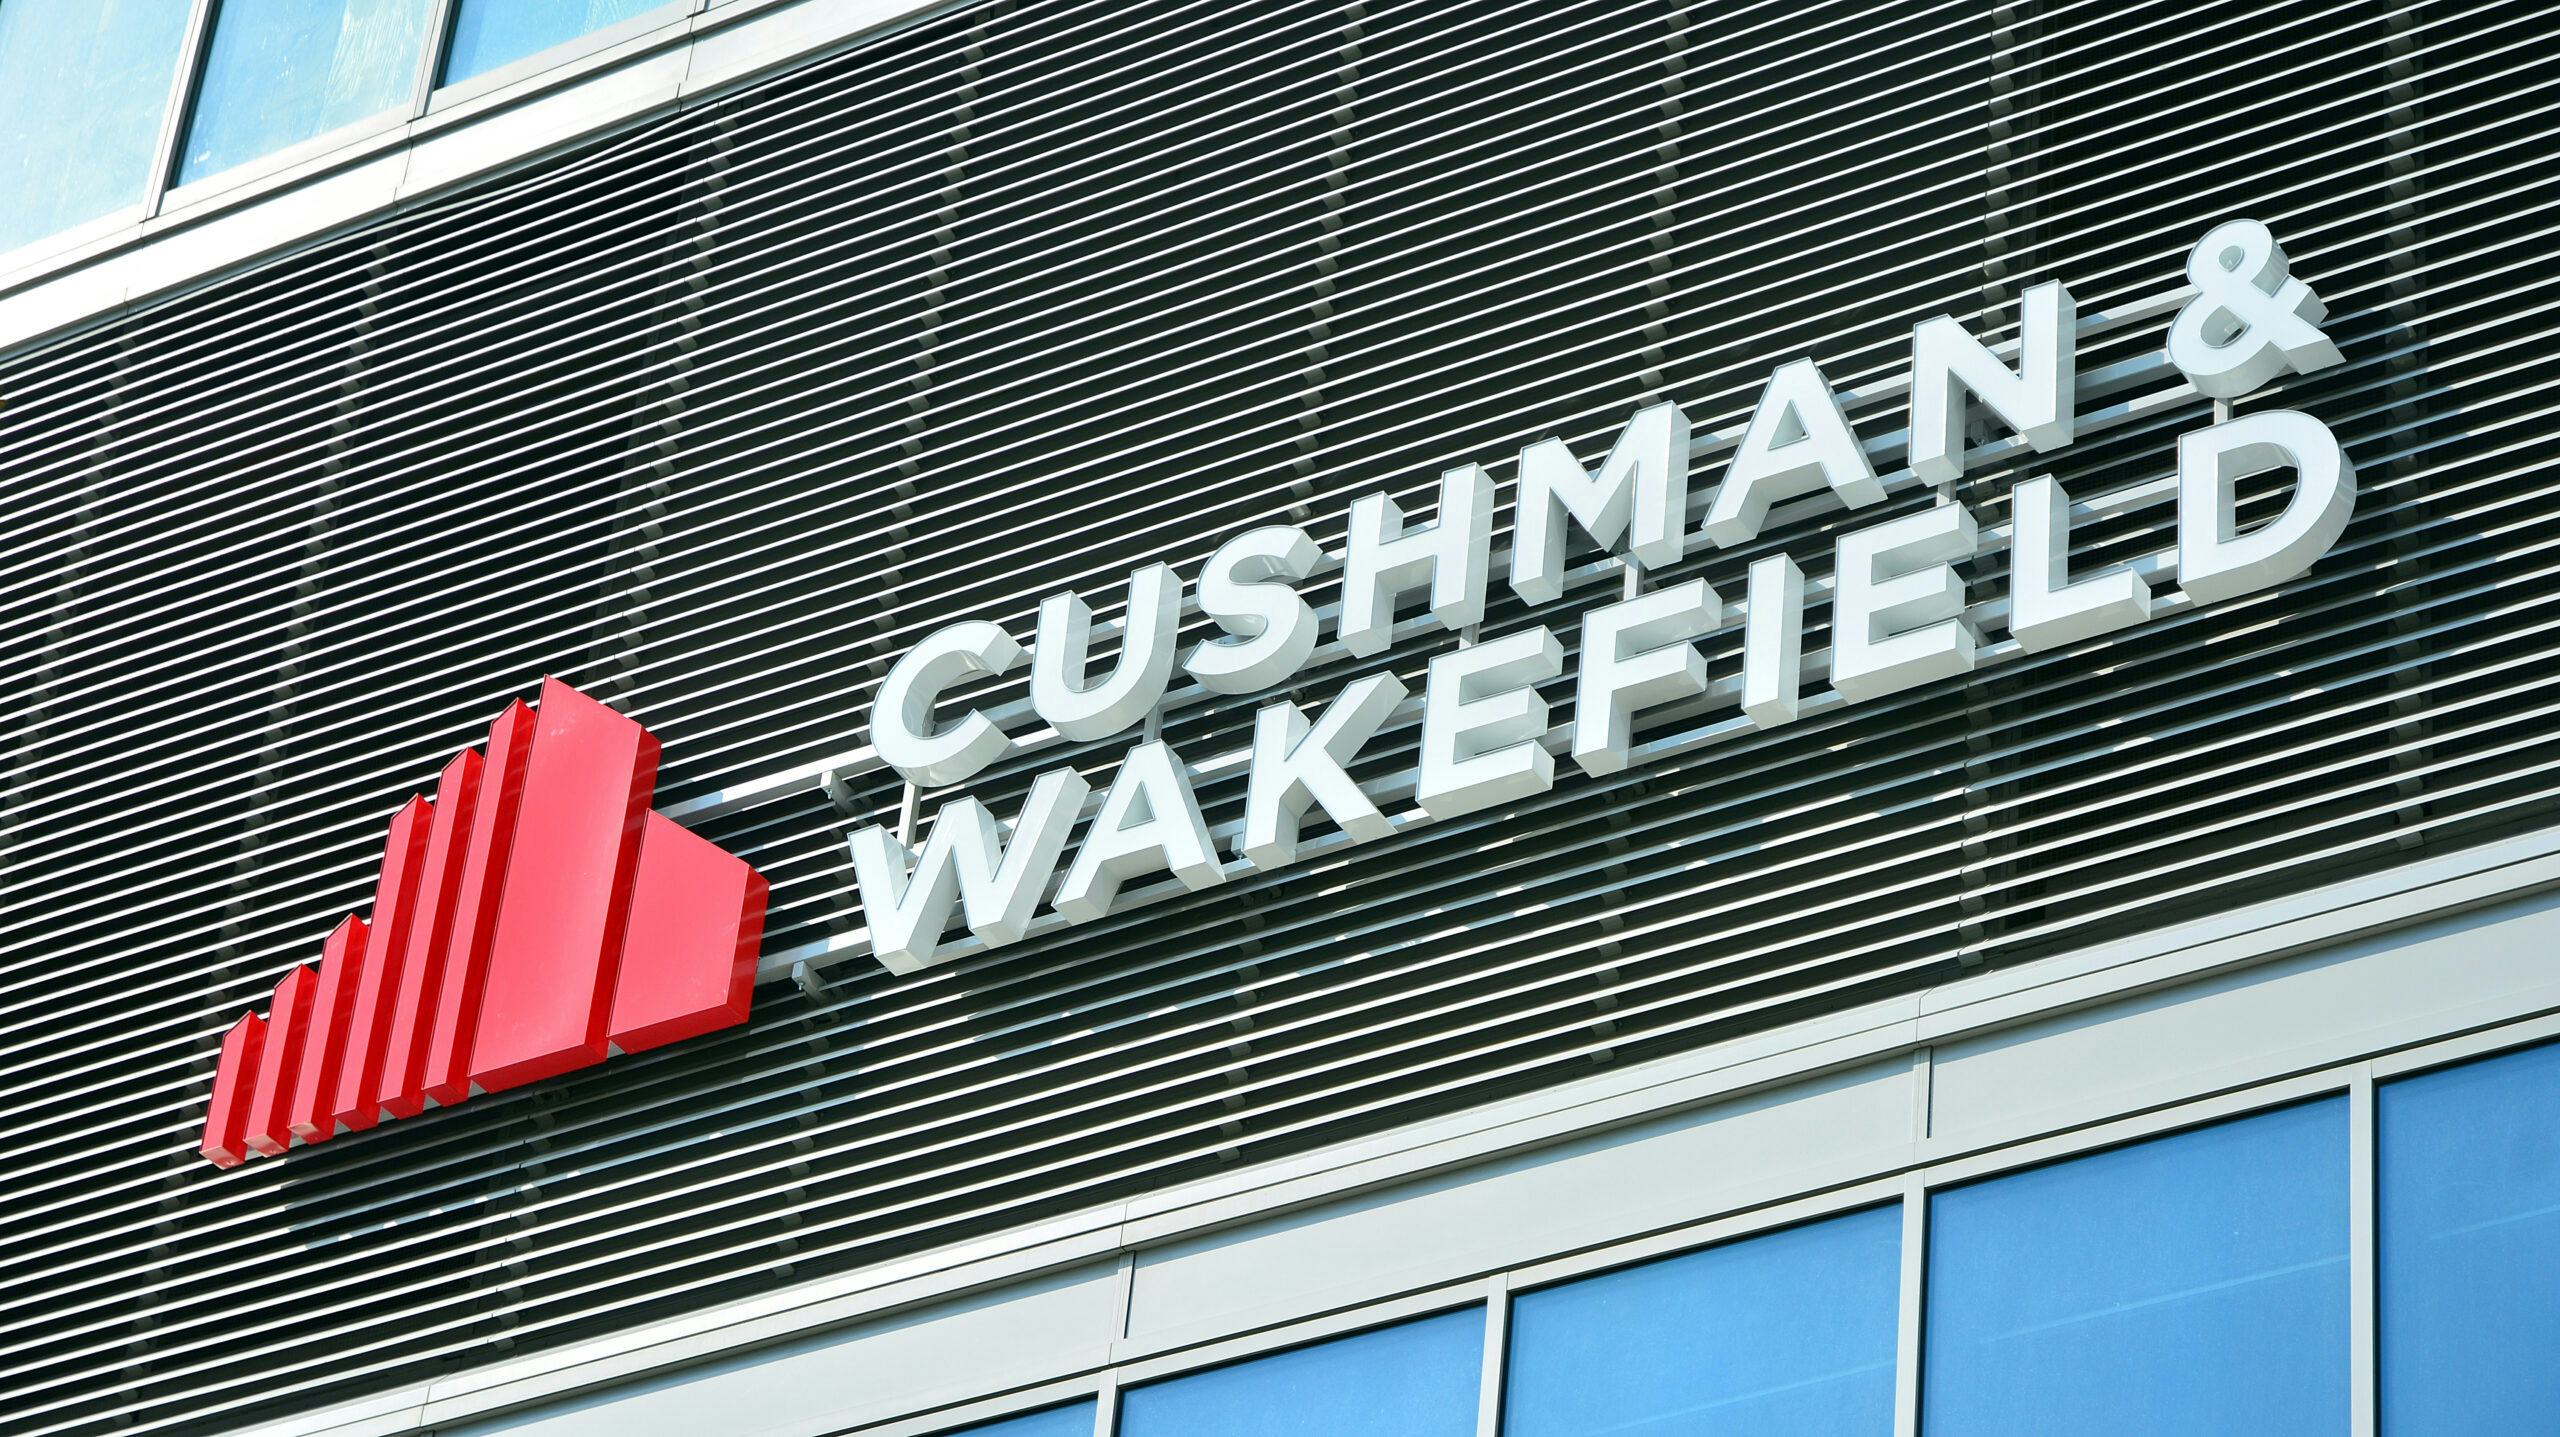 Cashflow Cushman & Wakefield negatief: schuld loopt op